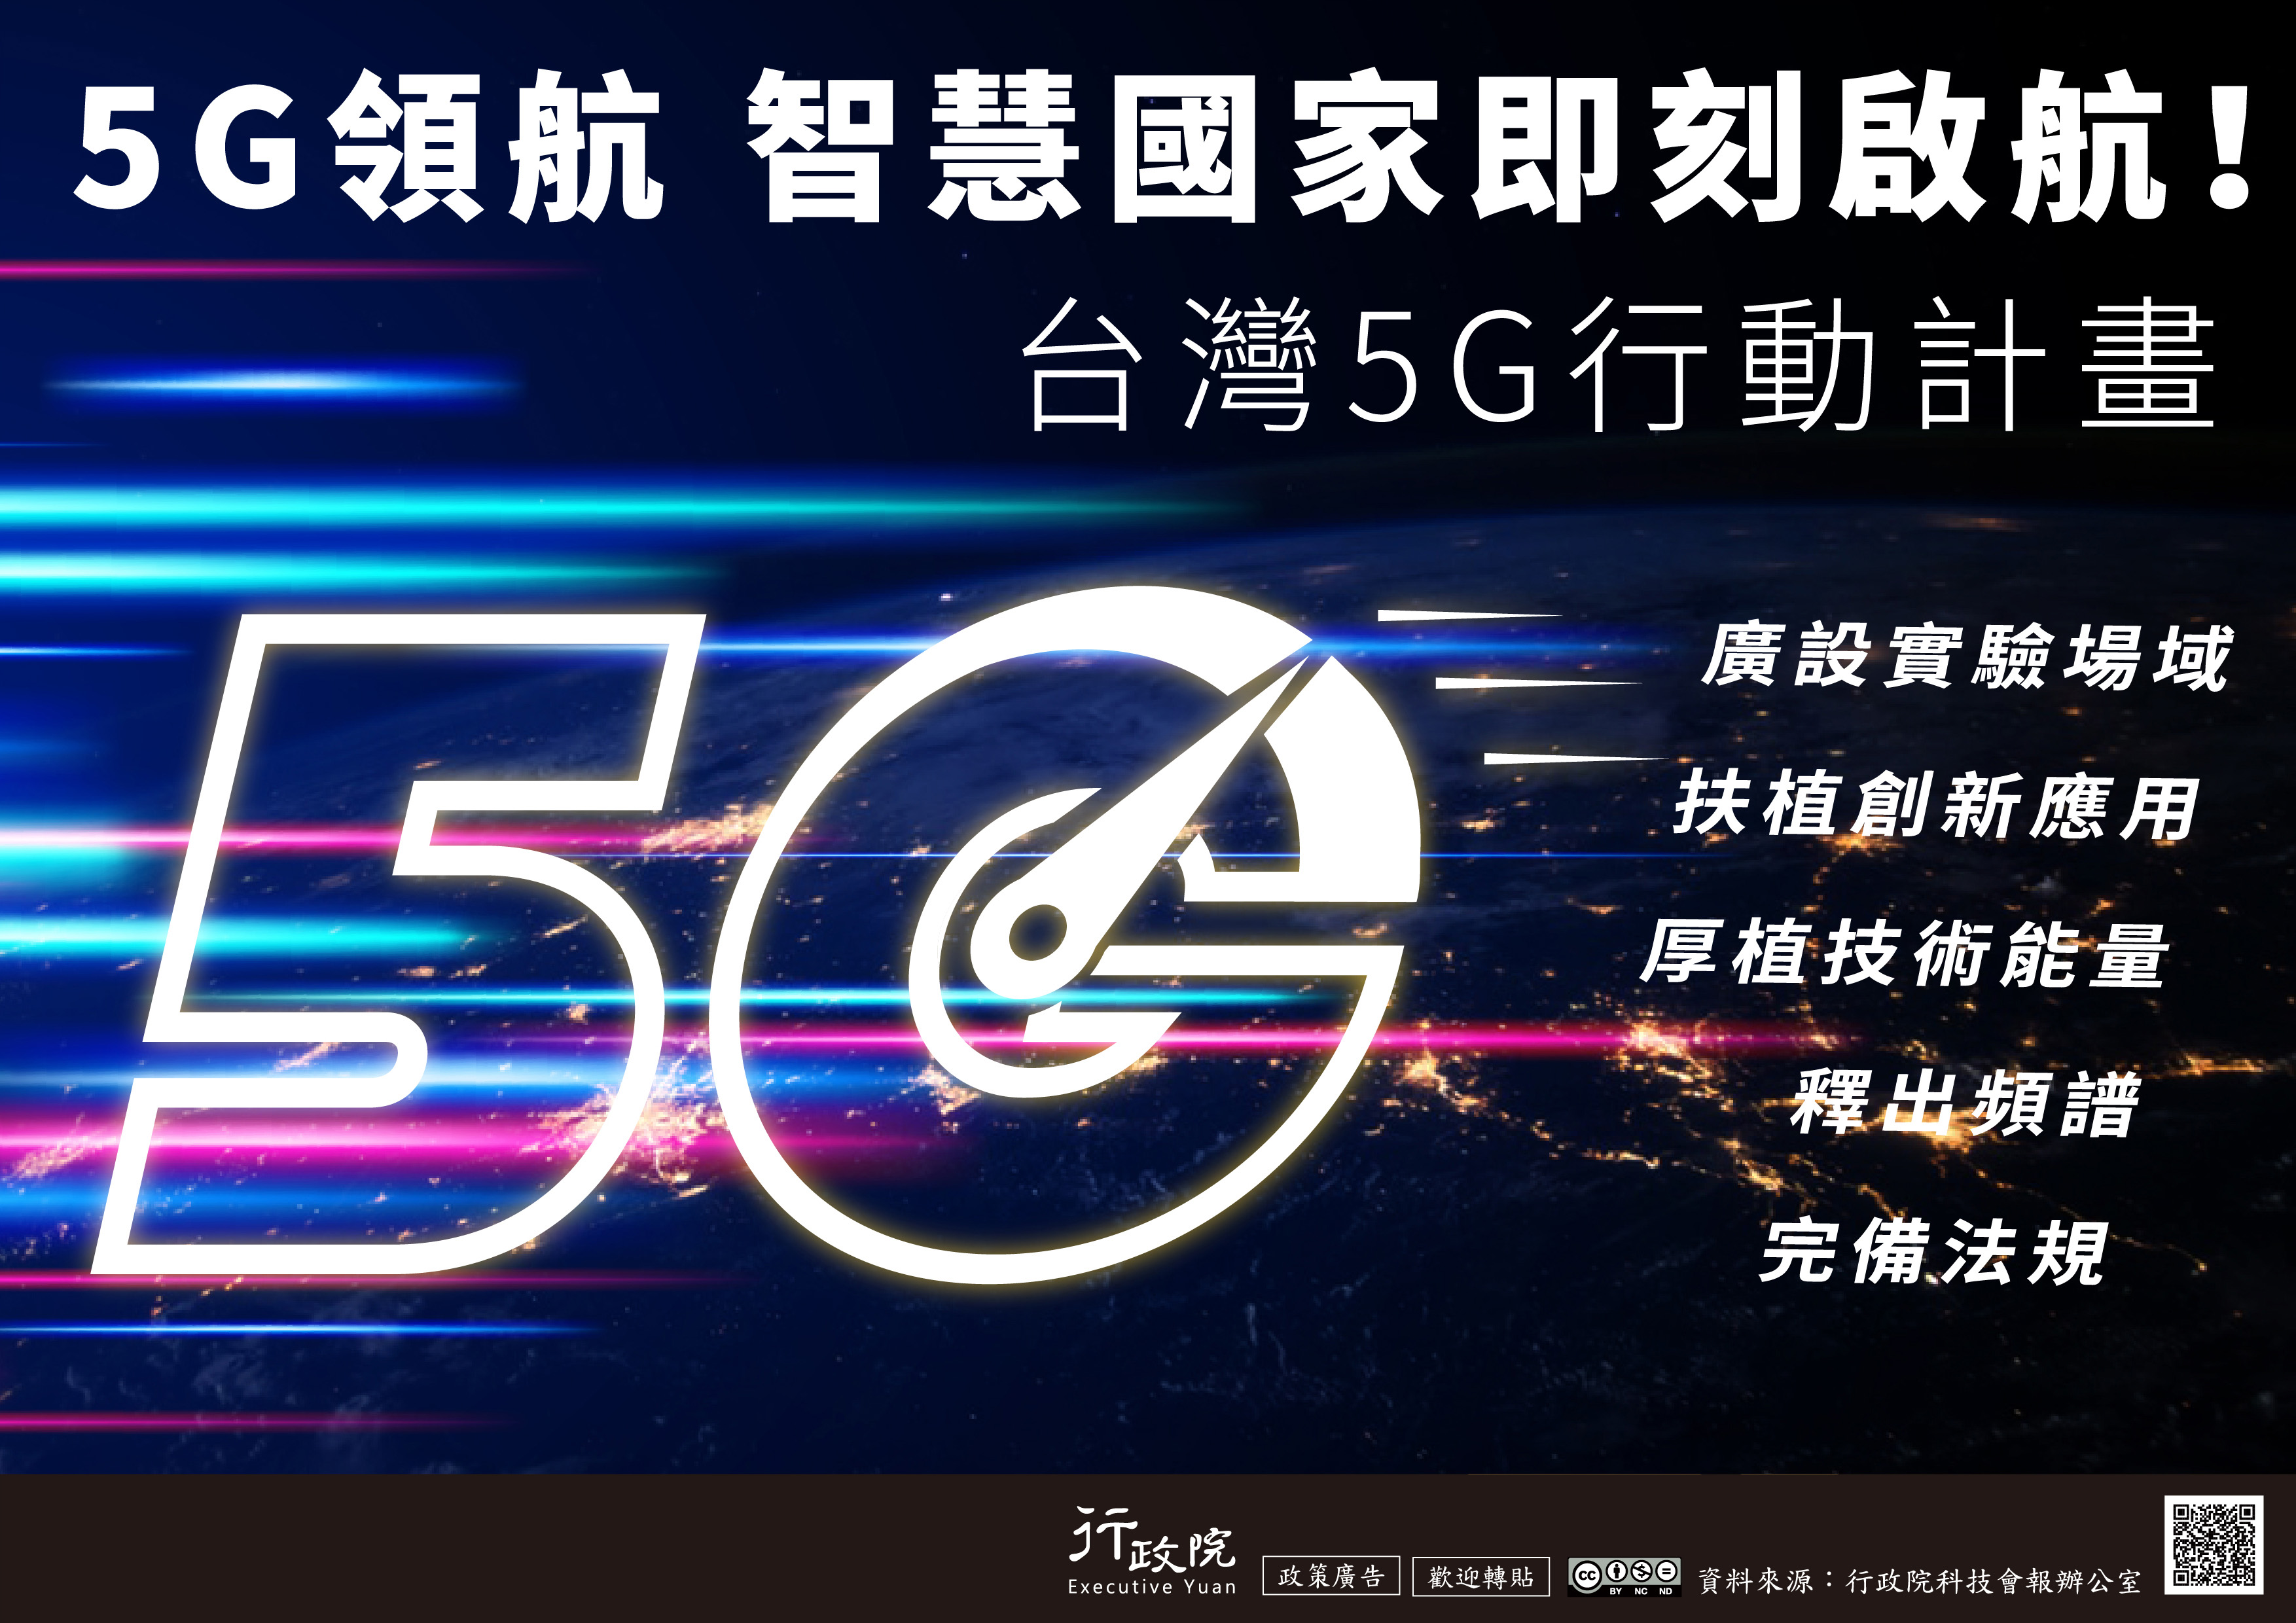 行政院新聞傳播處推廣「台灣5G行動計畫」政策